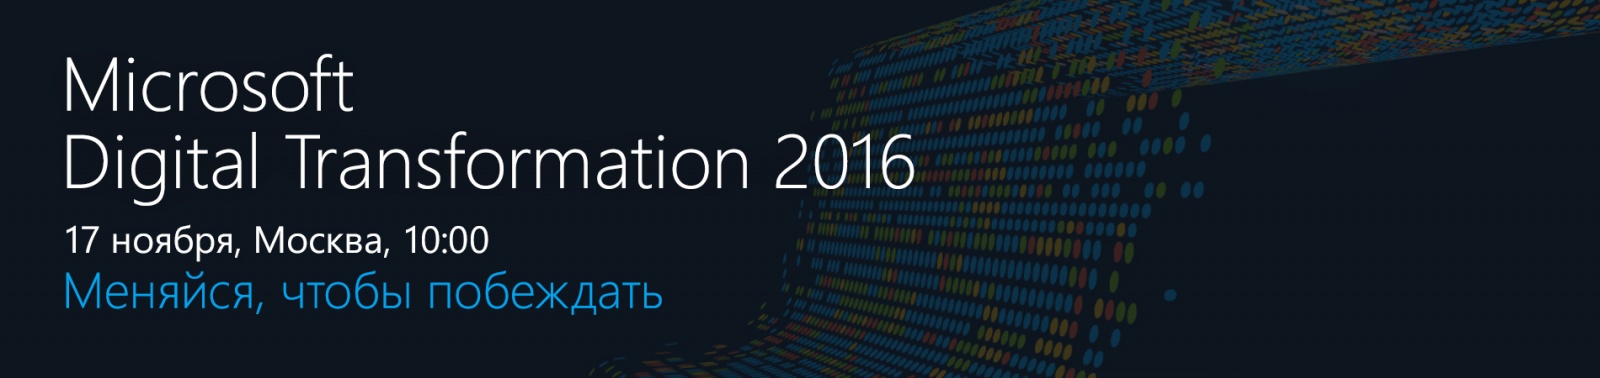 Digital Transformation 2016 - 1